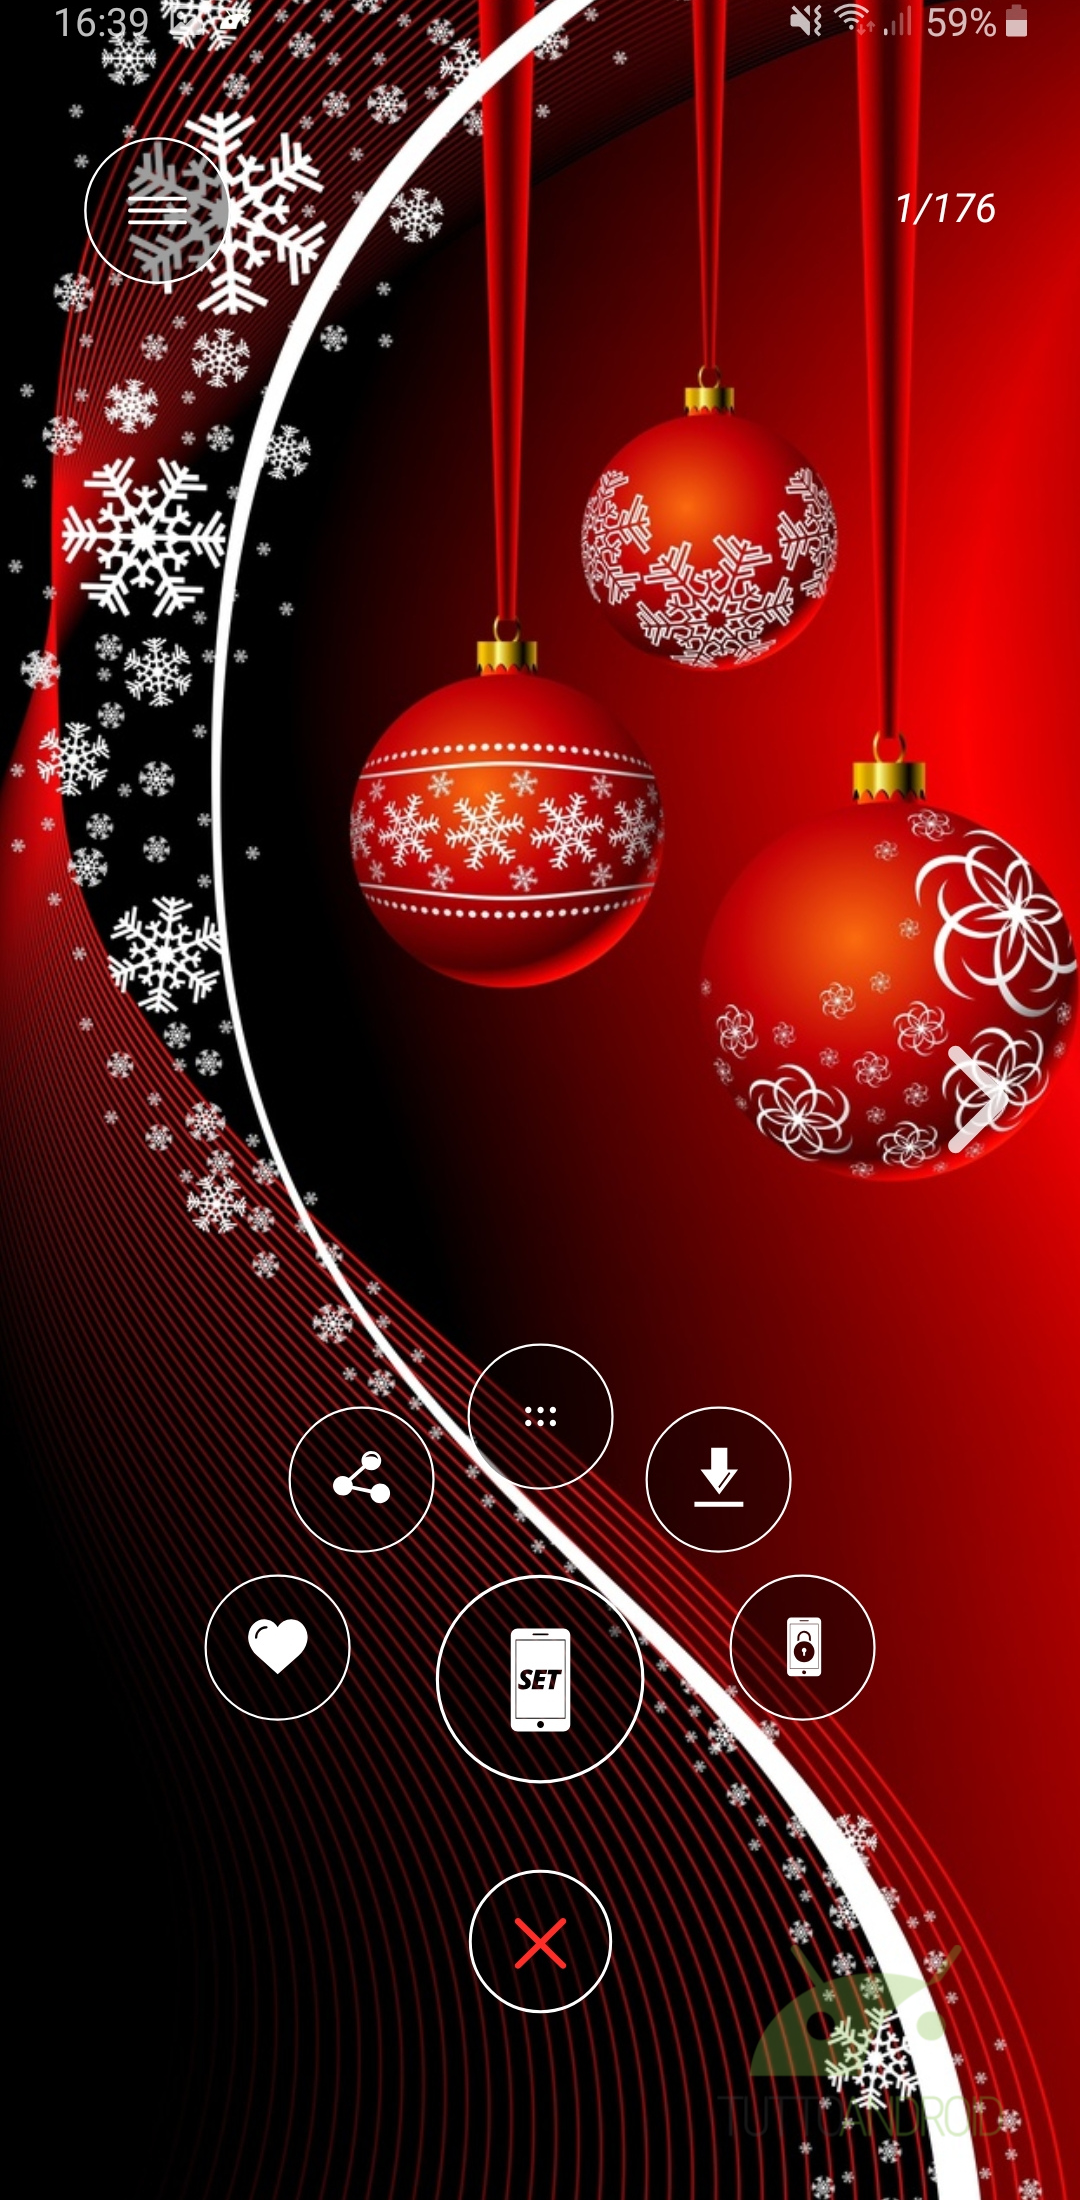 Sfondi Natalizi Lanterna.Trasformate Lo Smartphone In Una Festa Di Natale Con Queste 6 App